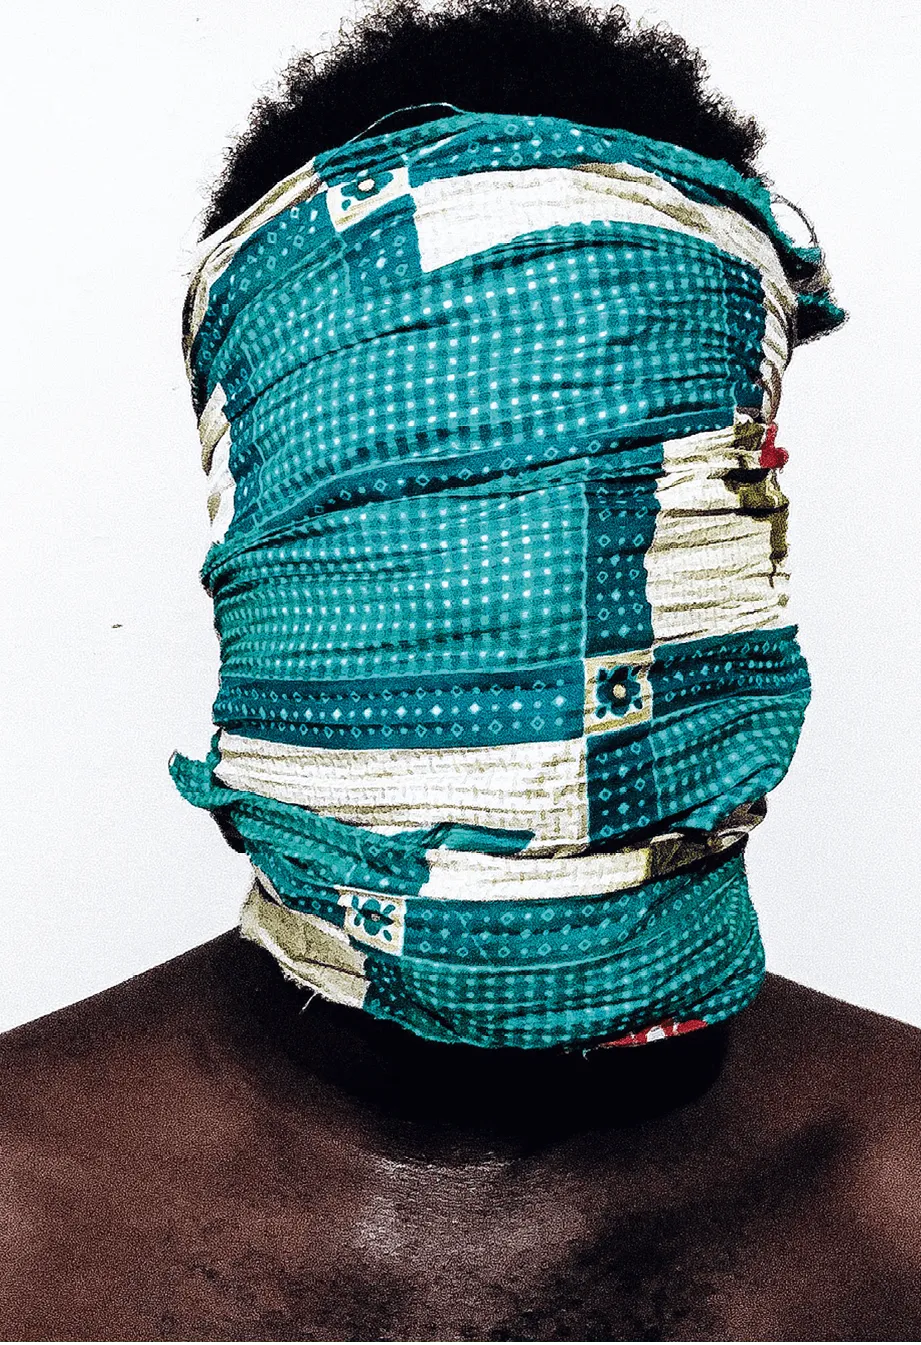 Emmanuel Amponsah, Blinded in Melanin, 2018, photographie
avec un téléphone portable